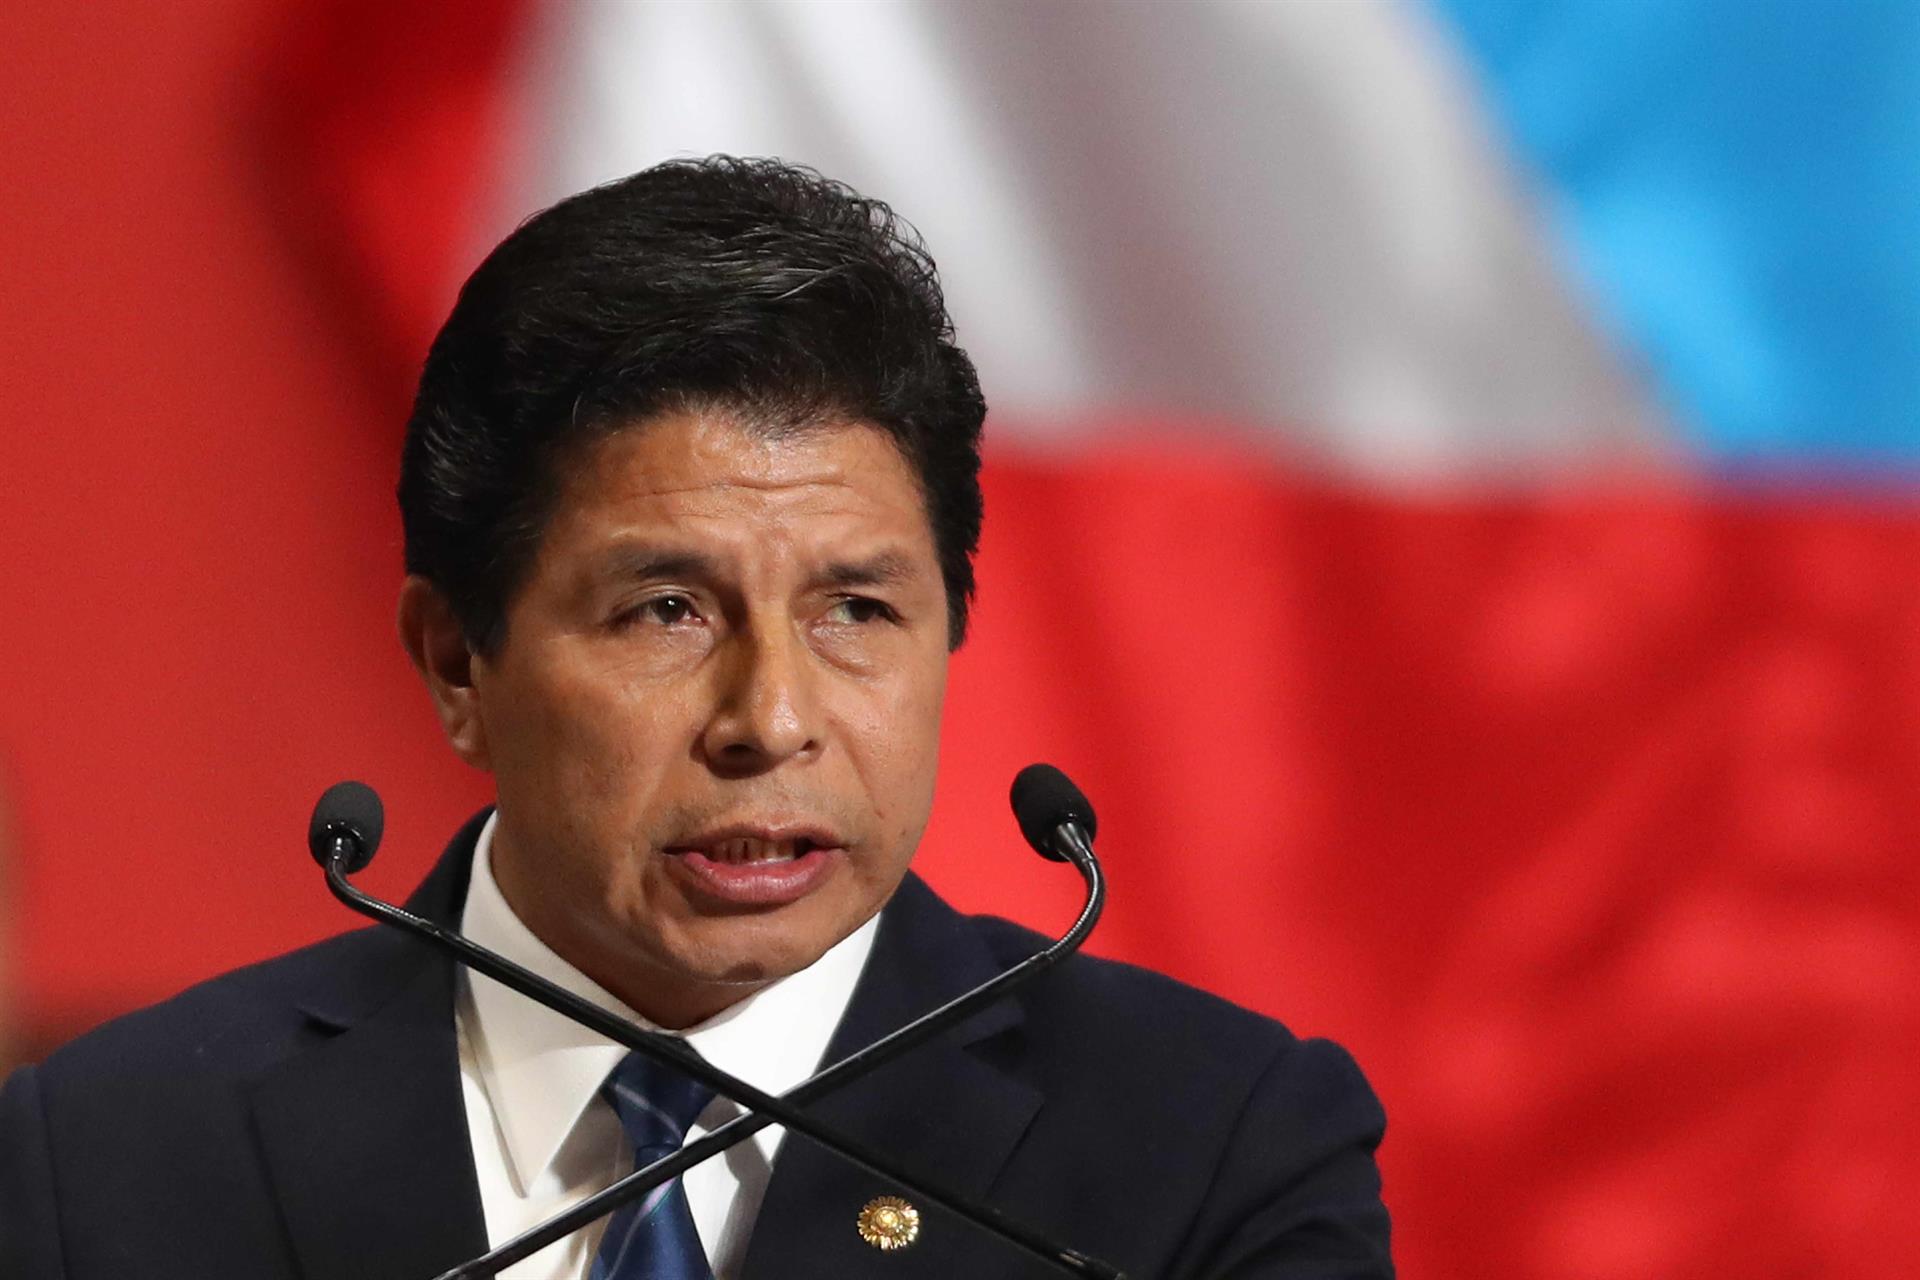 Preocupado, Pedro Castillo llamó a detener el “golpe de Estado” y debatir en Perú